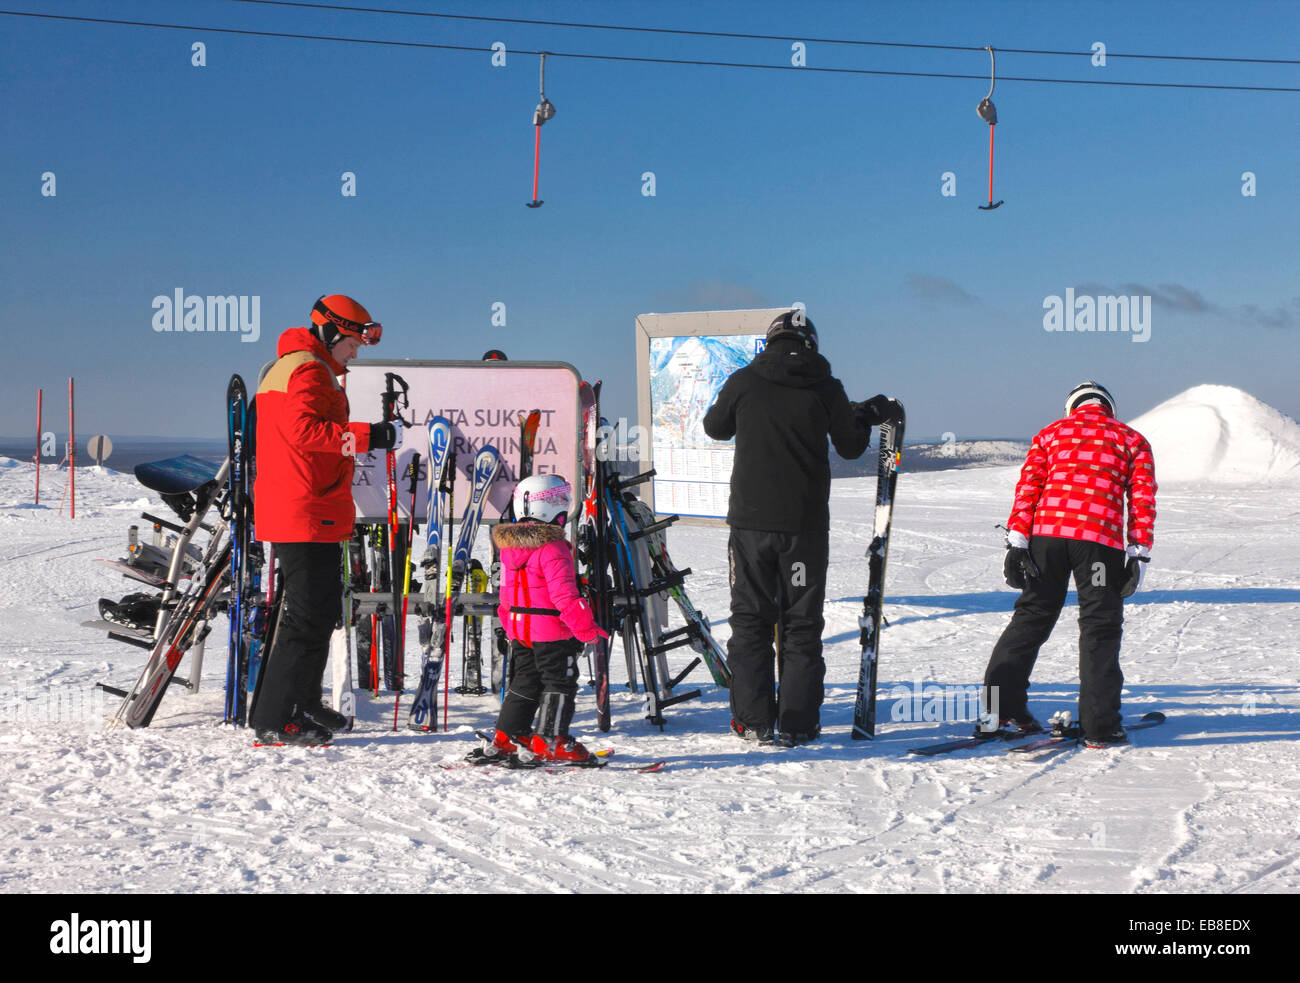 Finnland-Skigebiet Pyhä, Lappland Stockfoto